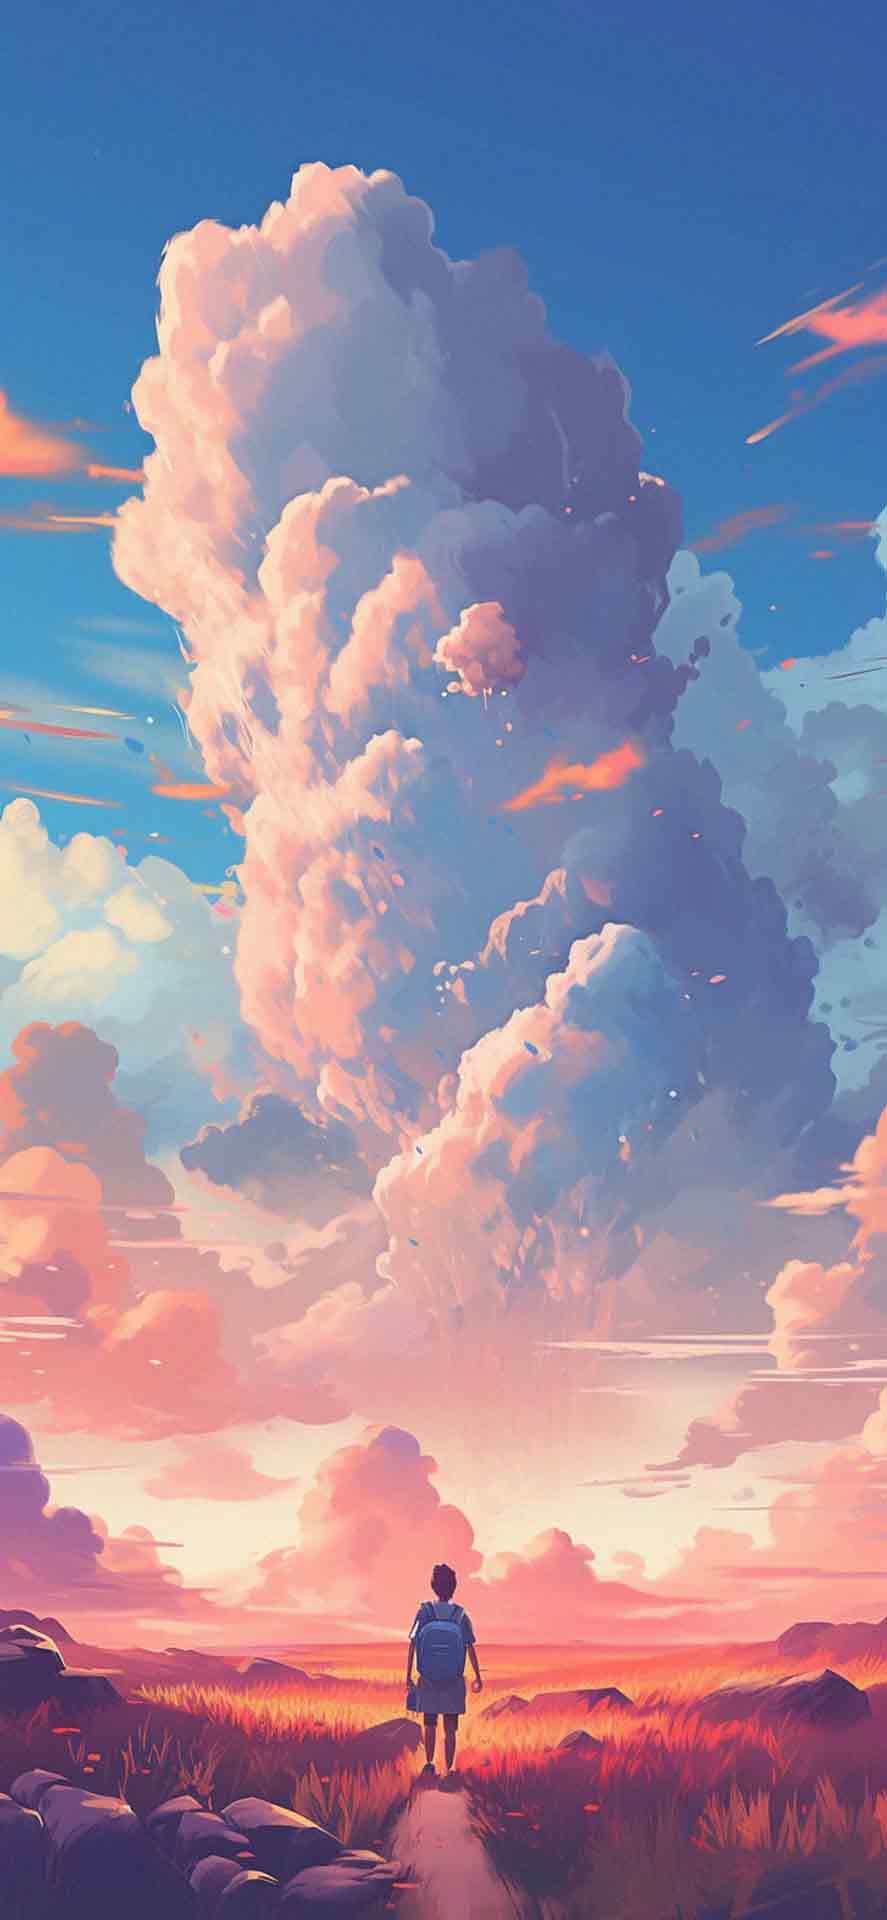 史诗般的天空和云彩艺术壁纸